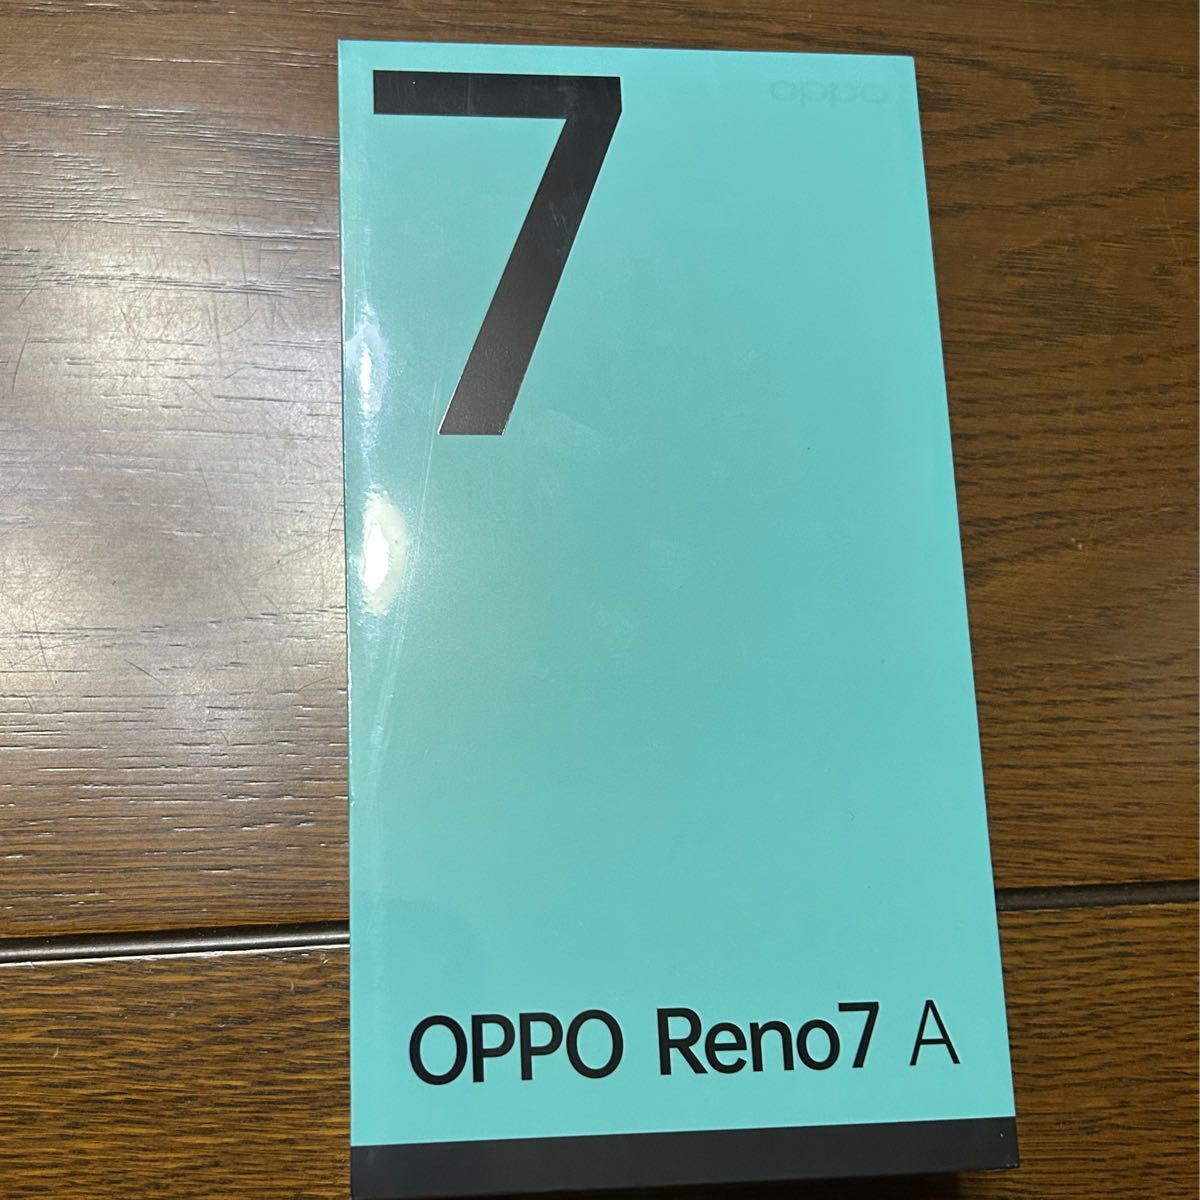 上品な 【楽天モバイル版】OPPO Reno7 A スターリーブラック【SIM